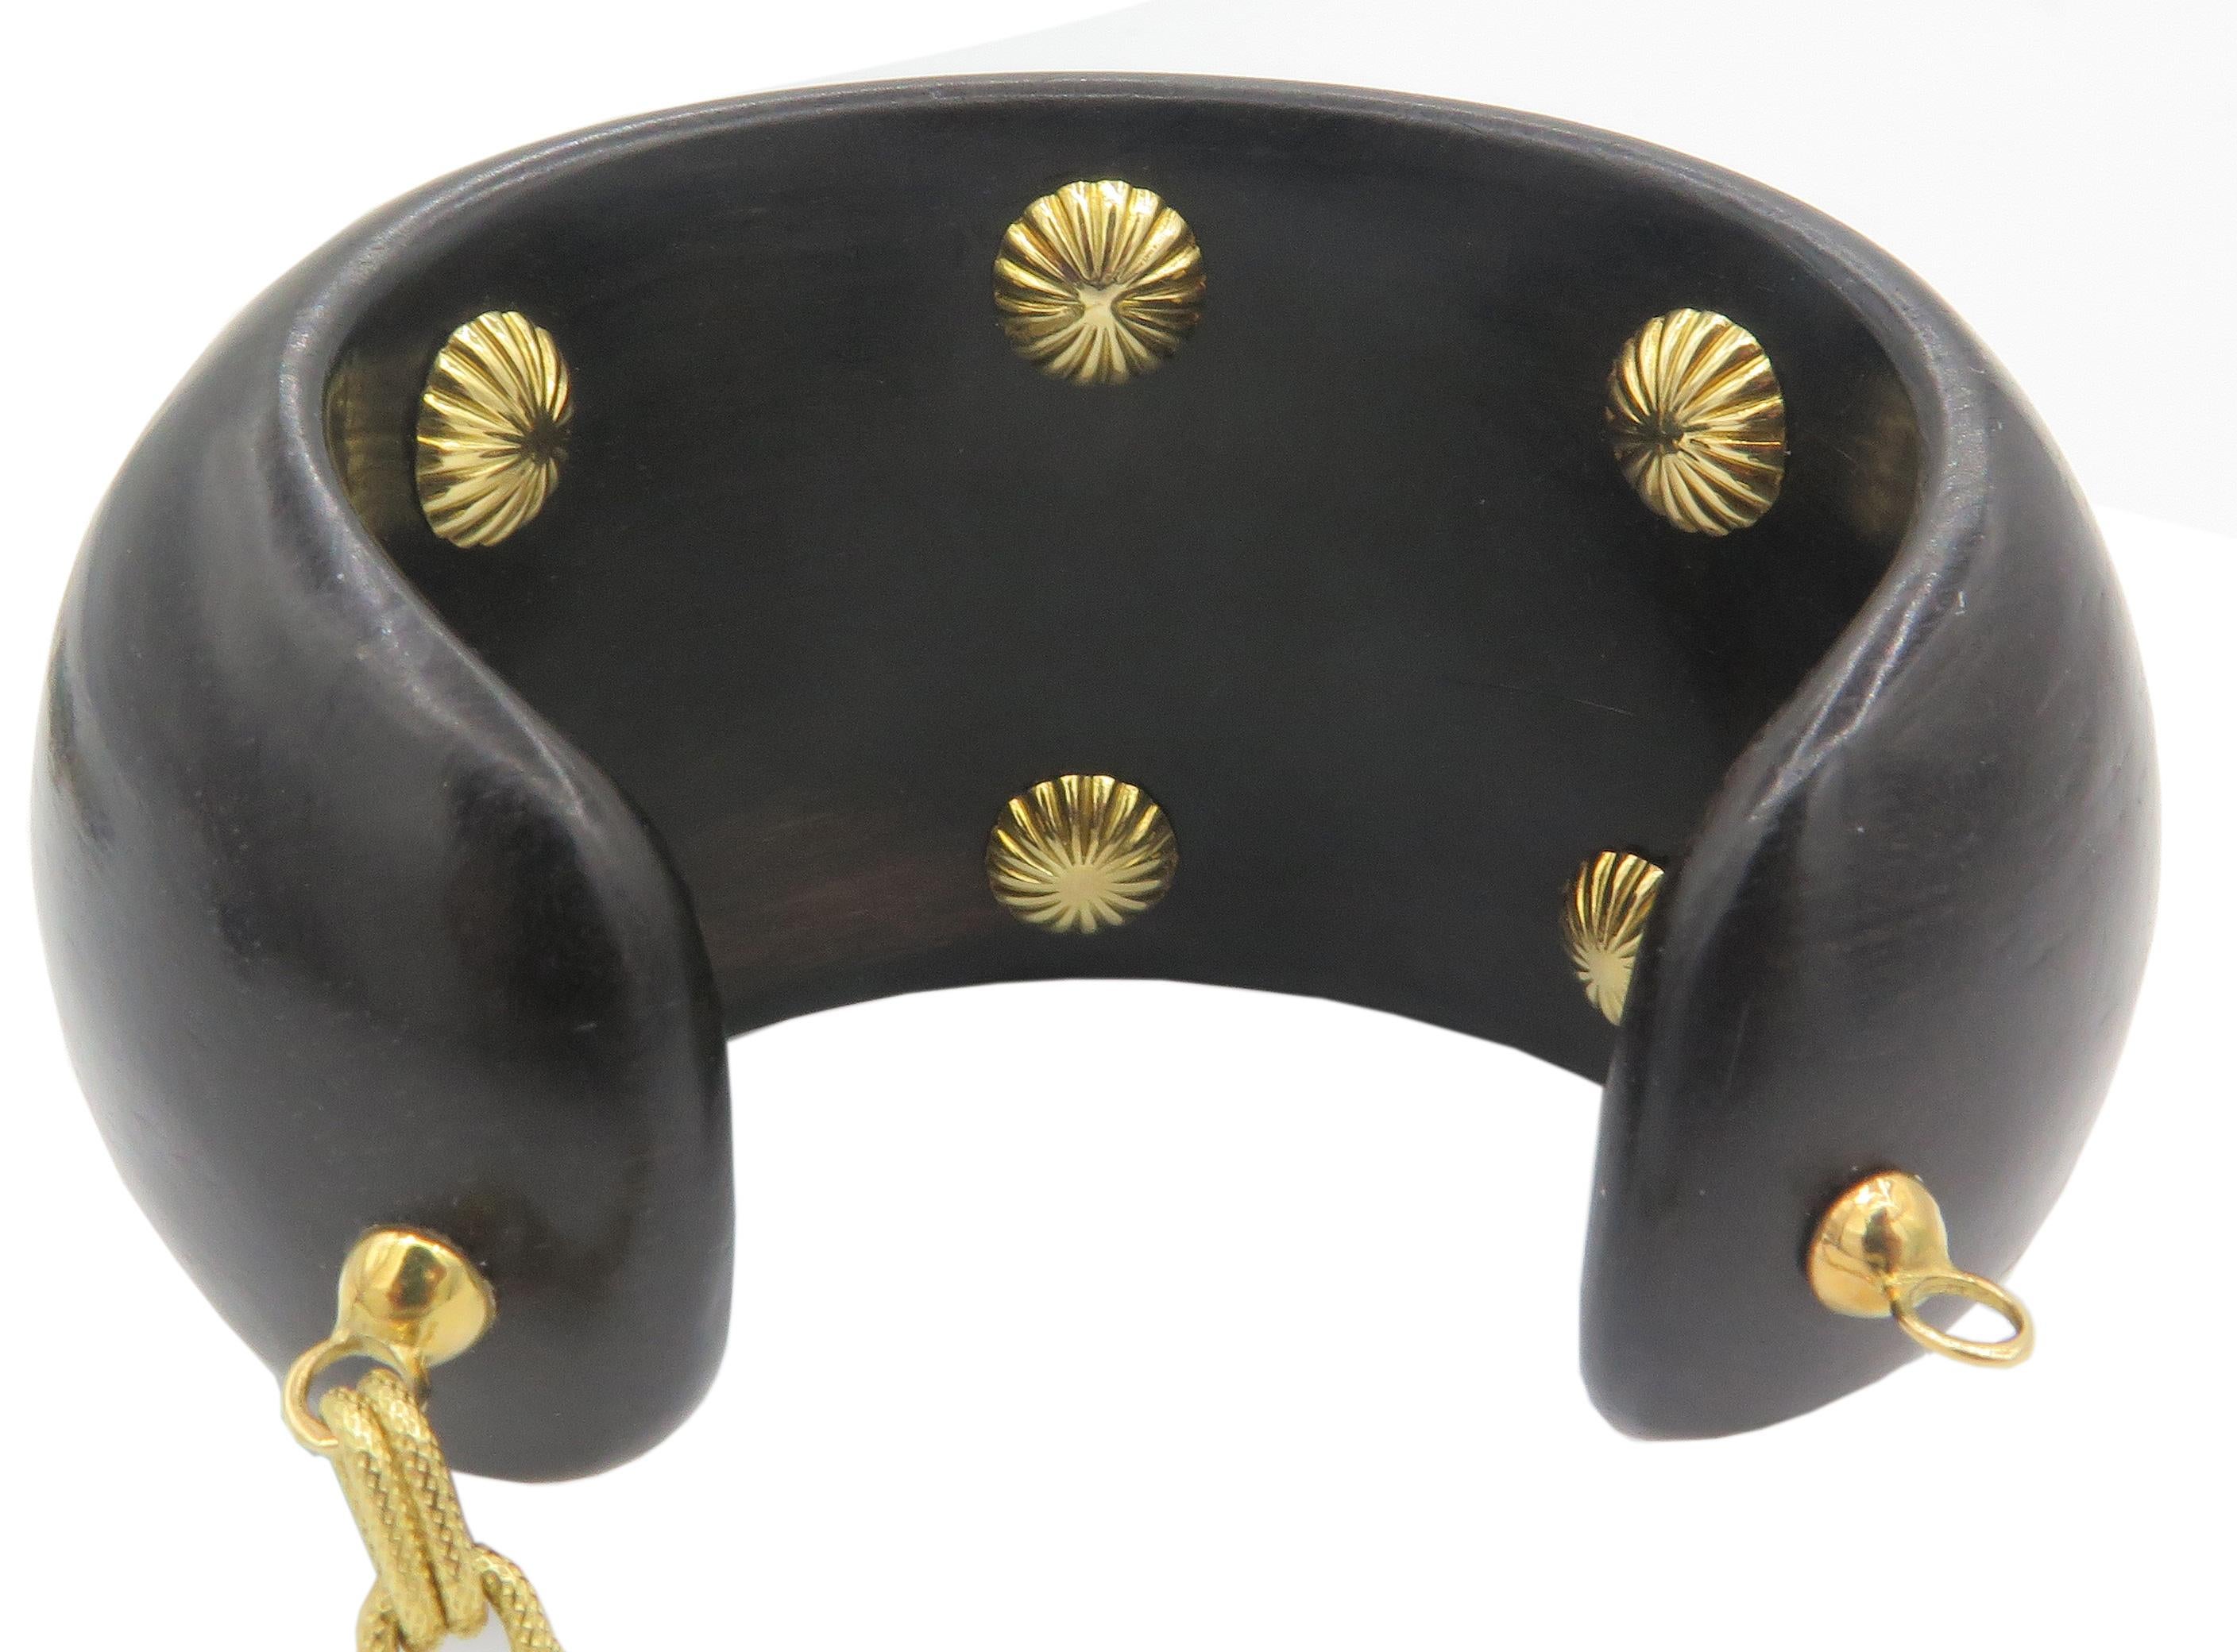 Magnifique bracelet manchette en or jaune 18 carats, en ébène. Ce magnifique bracelet est fabriqué en ébène et présente une agate cabochon au centre, montée sur une lunette en or jaune texturé 18 carats. Le bracelet comprend un maillon de chaîne en